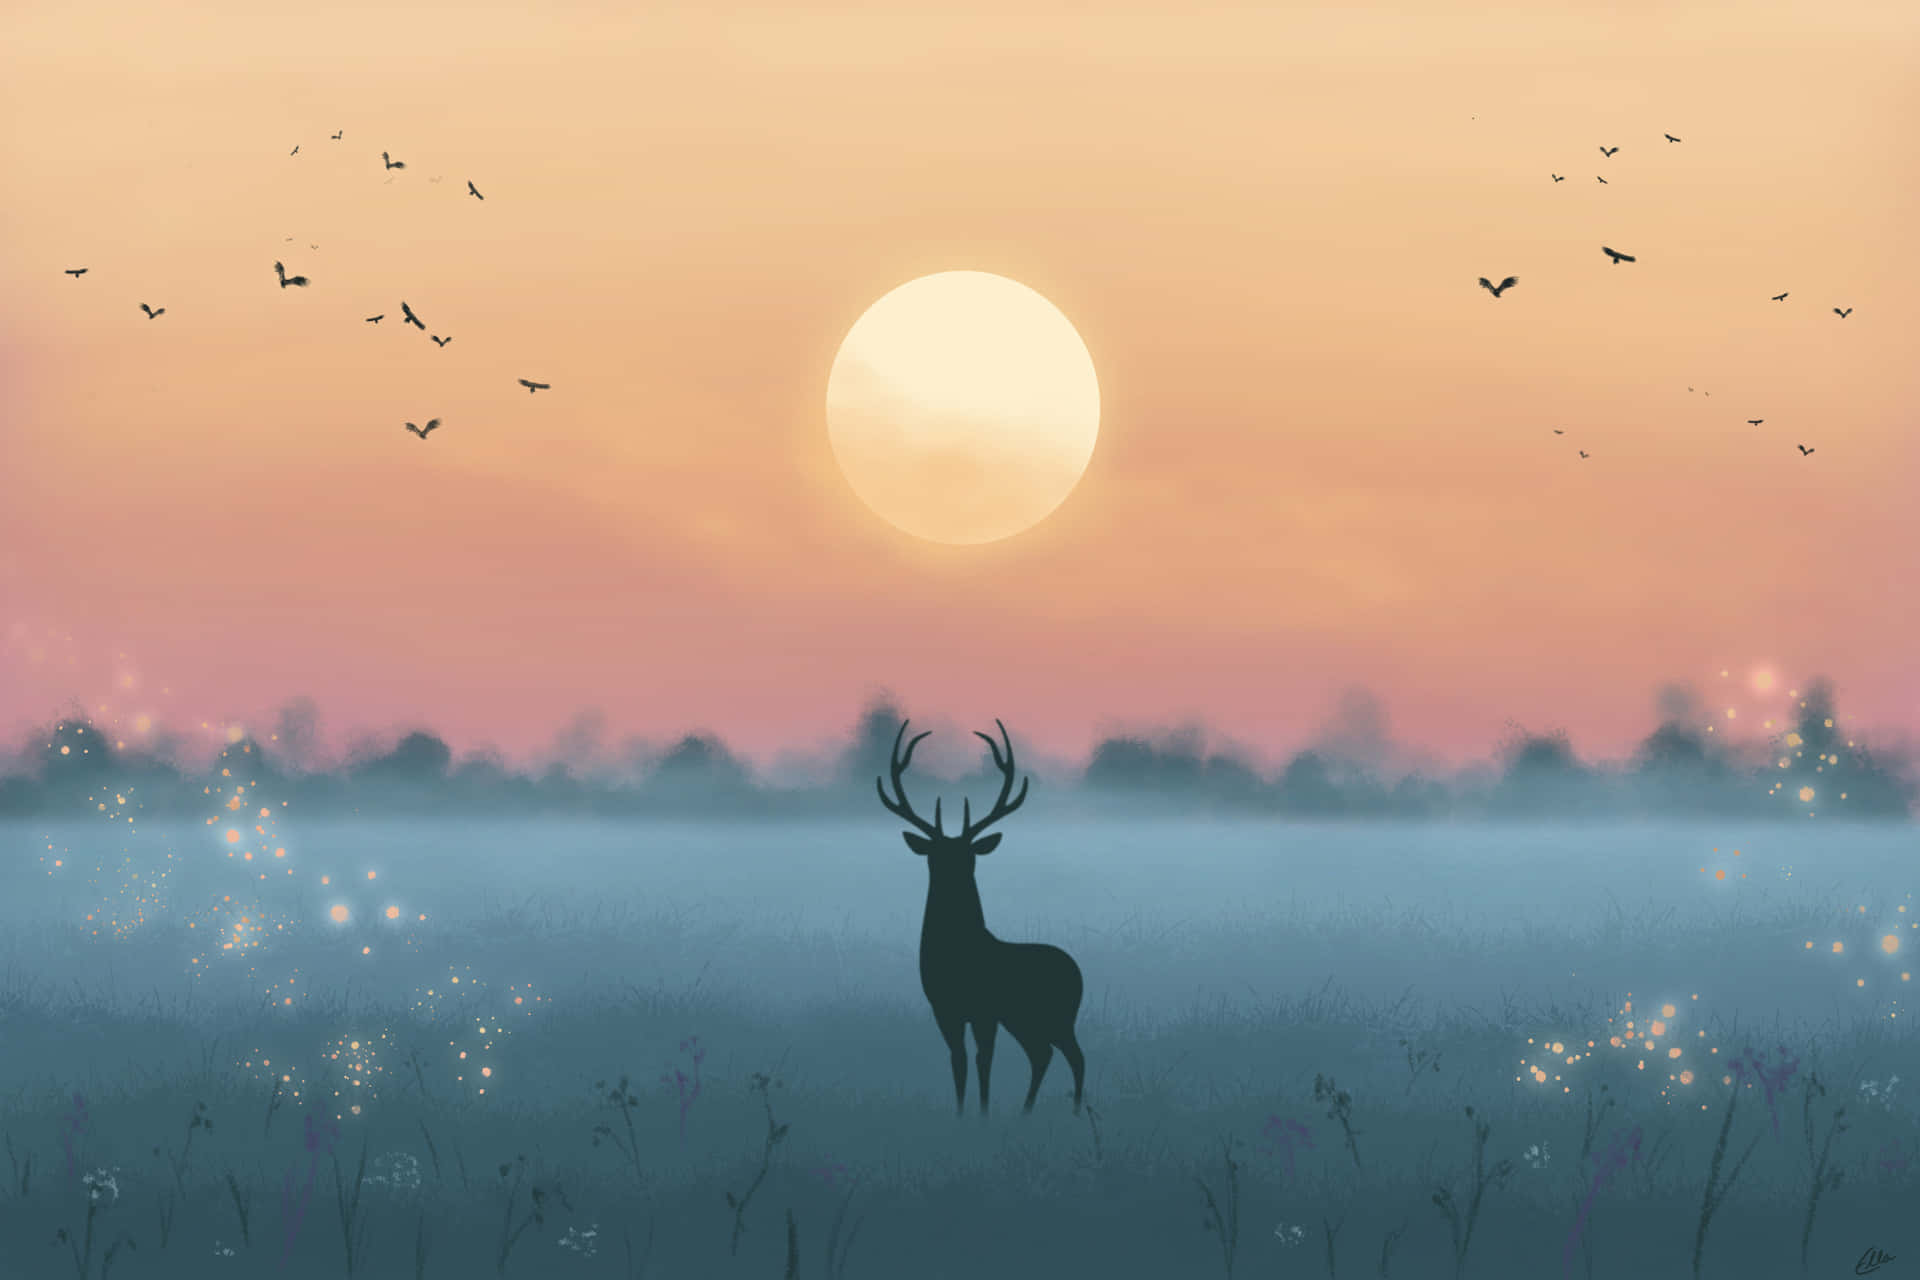 A majestic deer jumps gracefully through a sunlit field Wallpaper